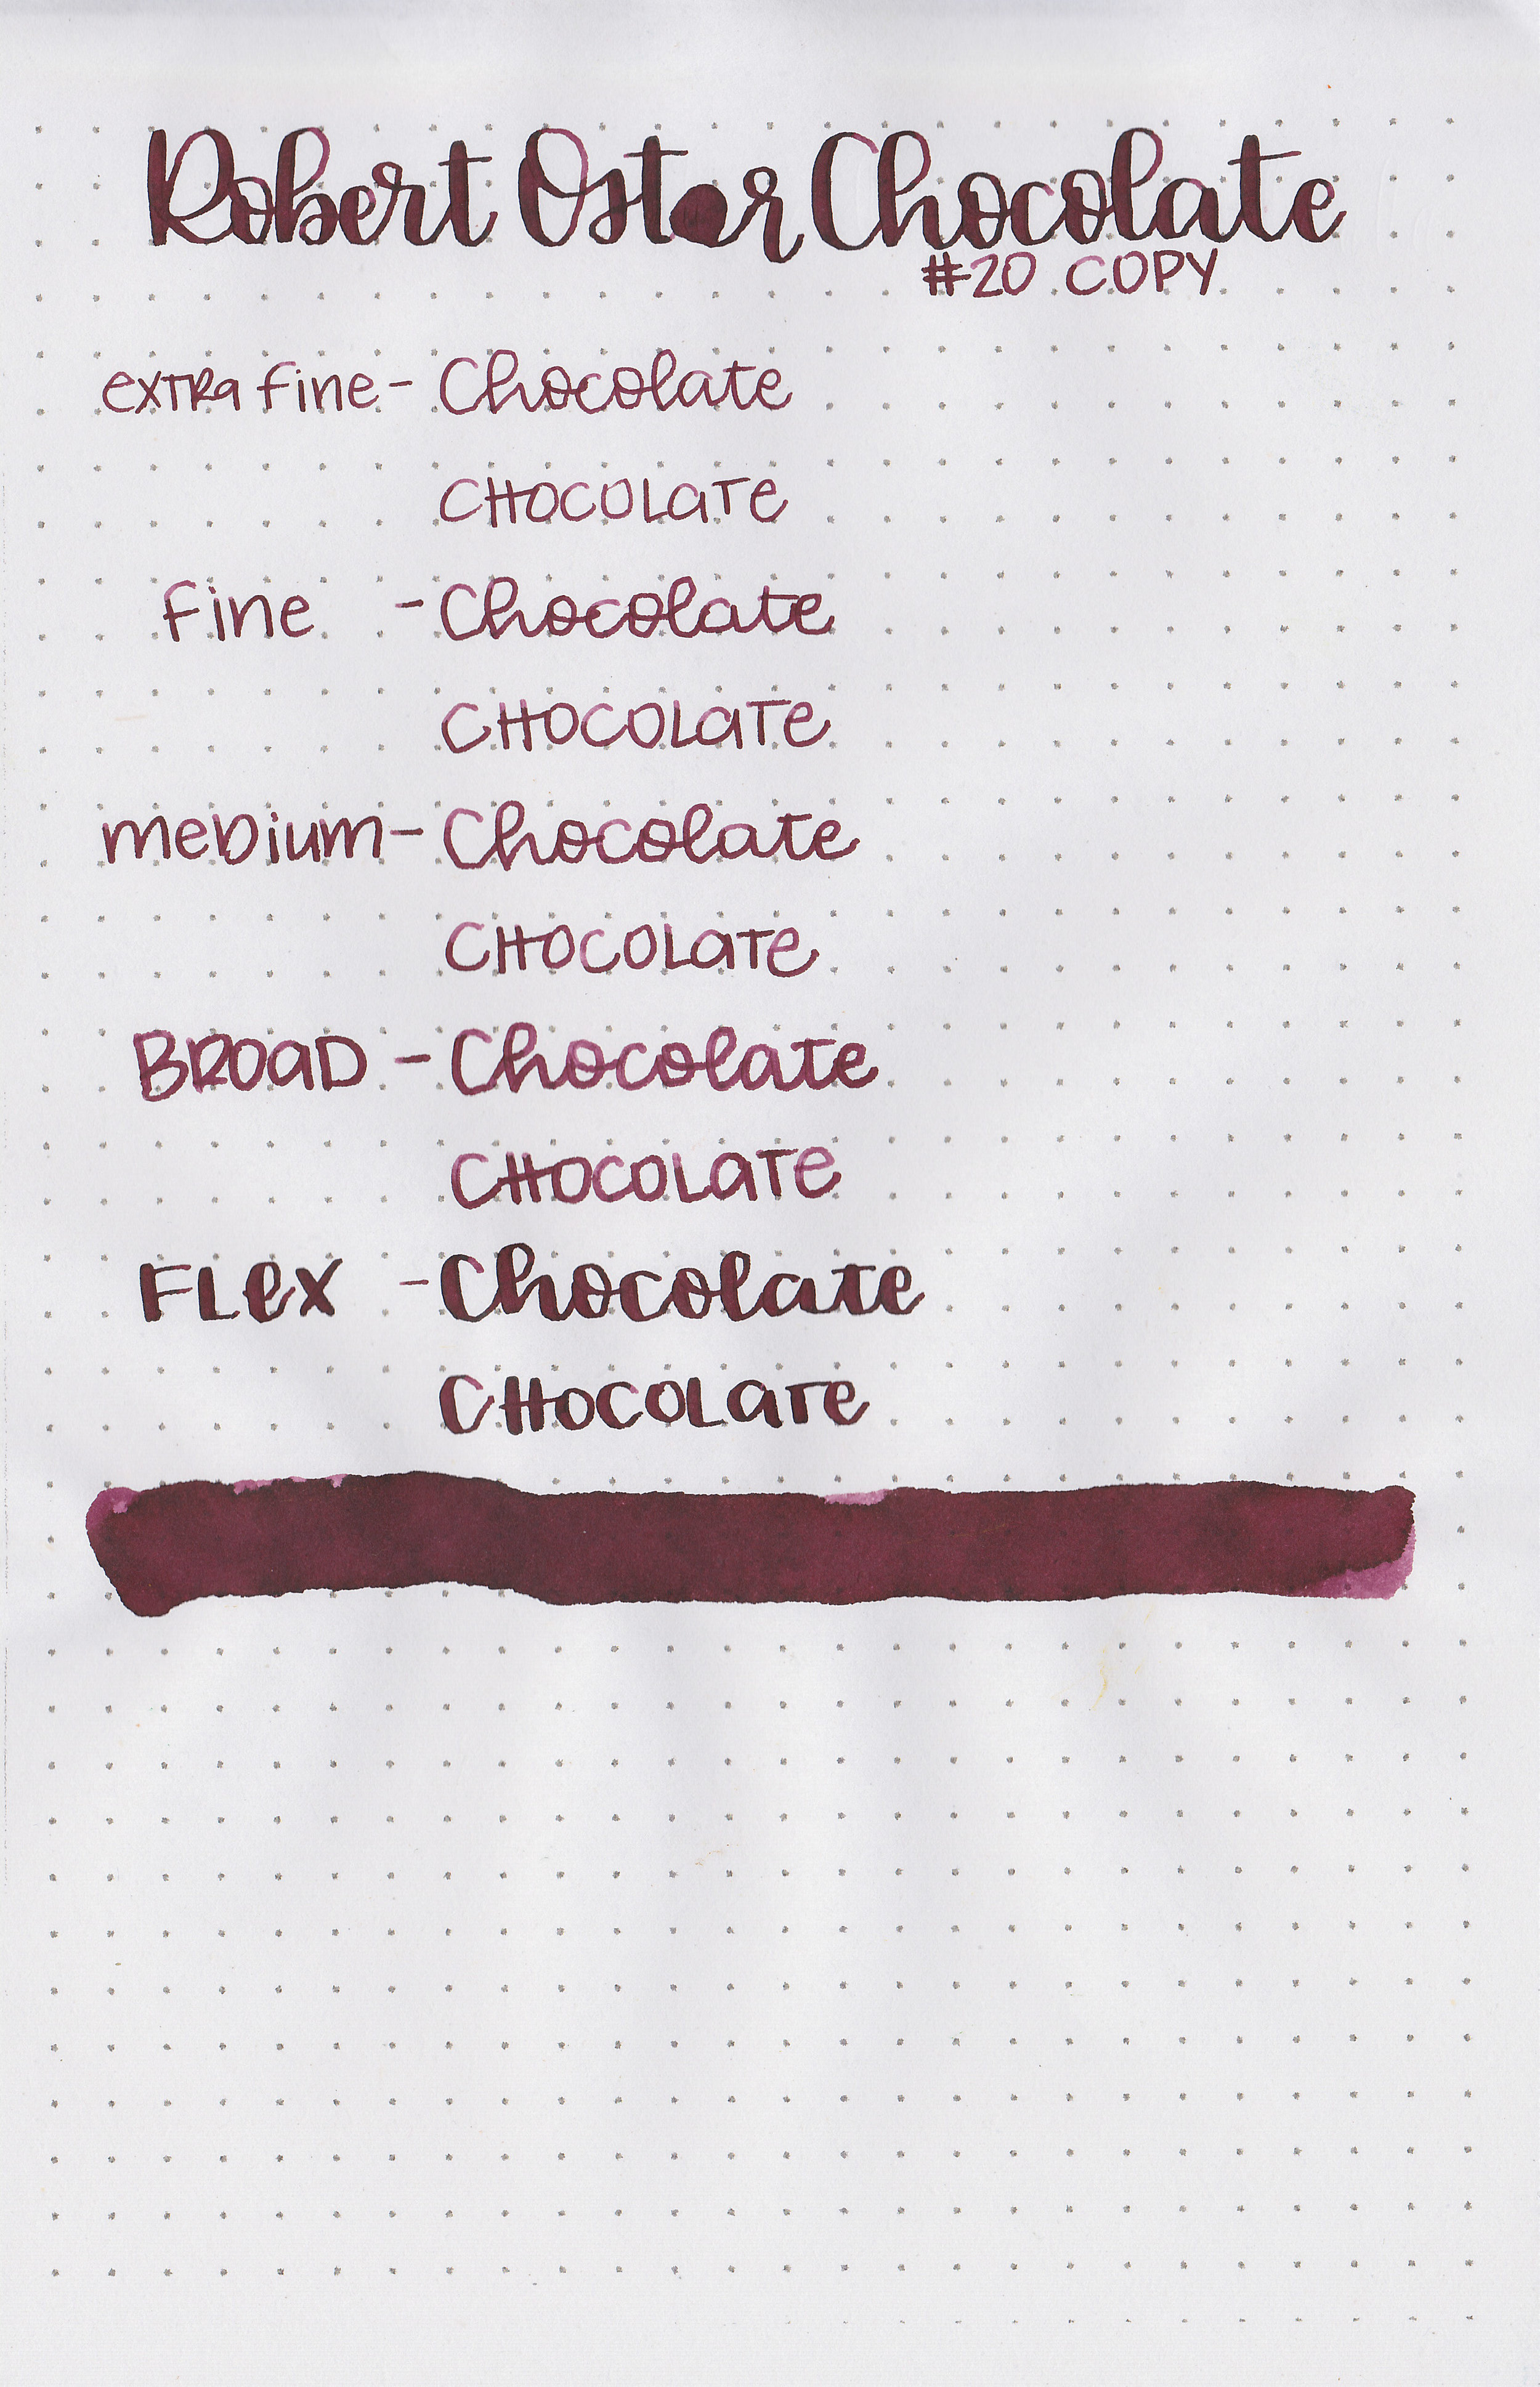 ro-chocolate-11.jpg